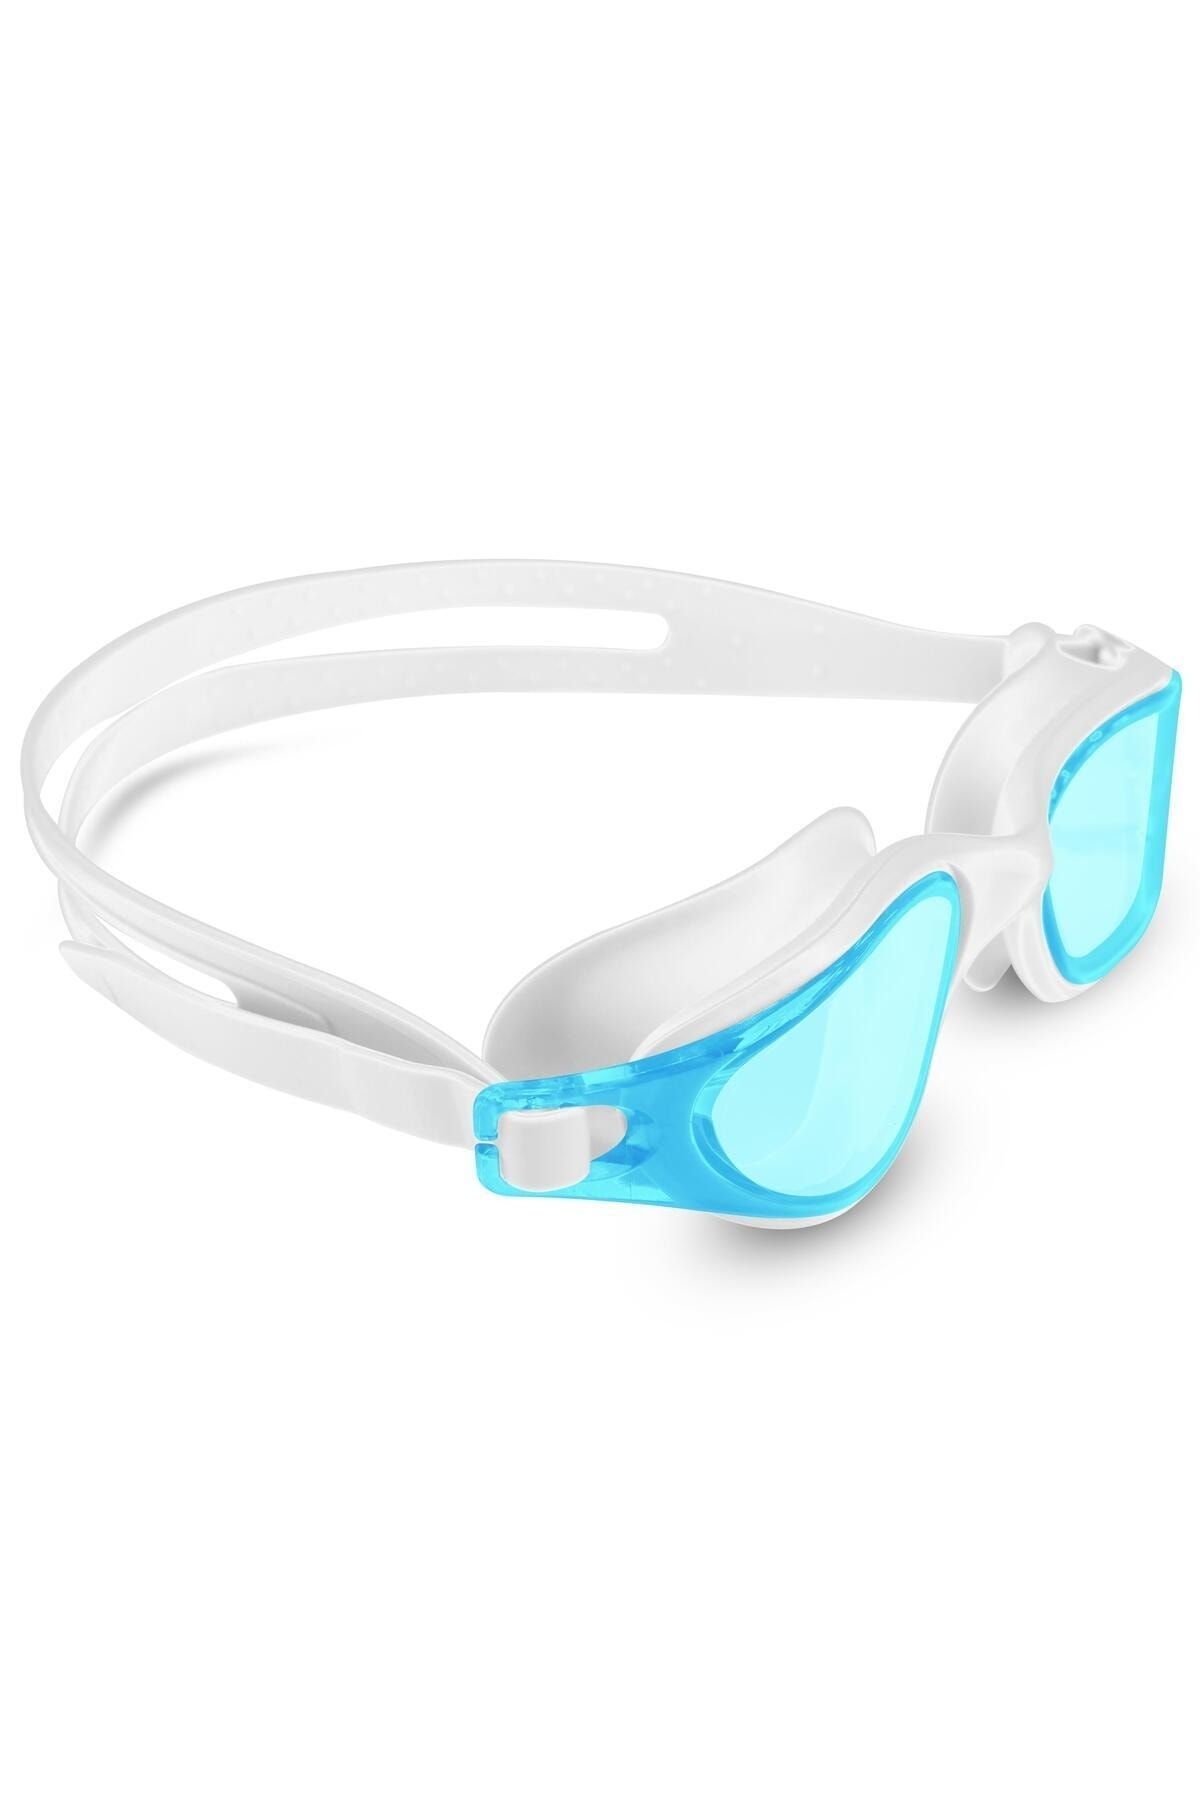 Soft Kare Buğu Yapmaz Yüzücü Gözlüğü UV Korumalı Yüzme Havuz Deniz Gözlüğü Turkuaz